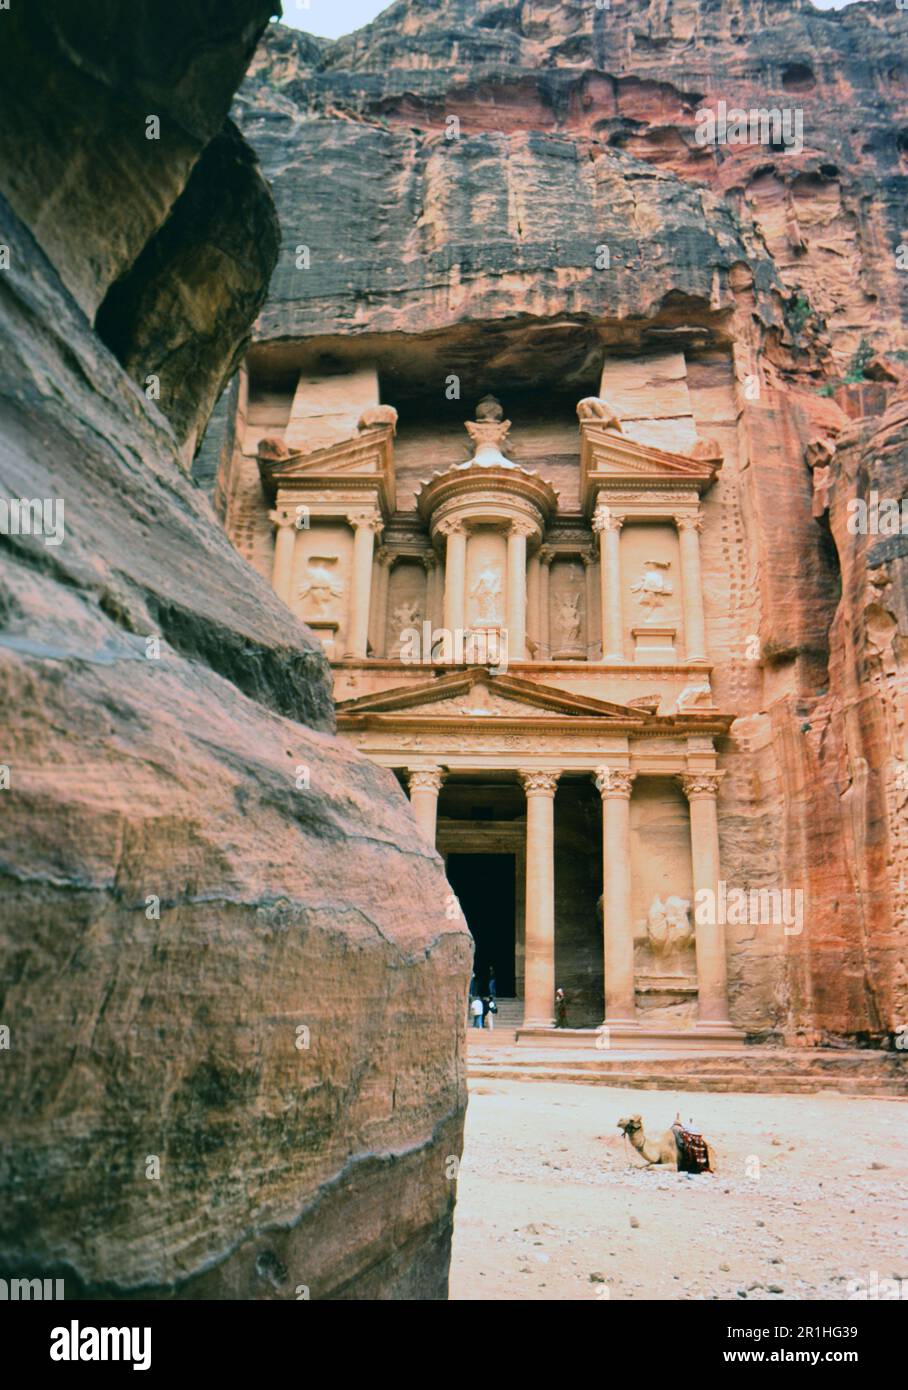 Petra Jordanien: Al Khaznov, die Schatzkammer, über 2000 Jahre alt. Kamel im Vordergrund. Foto: Joan Iaconetti Ca. 1990er Stockfoto